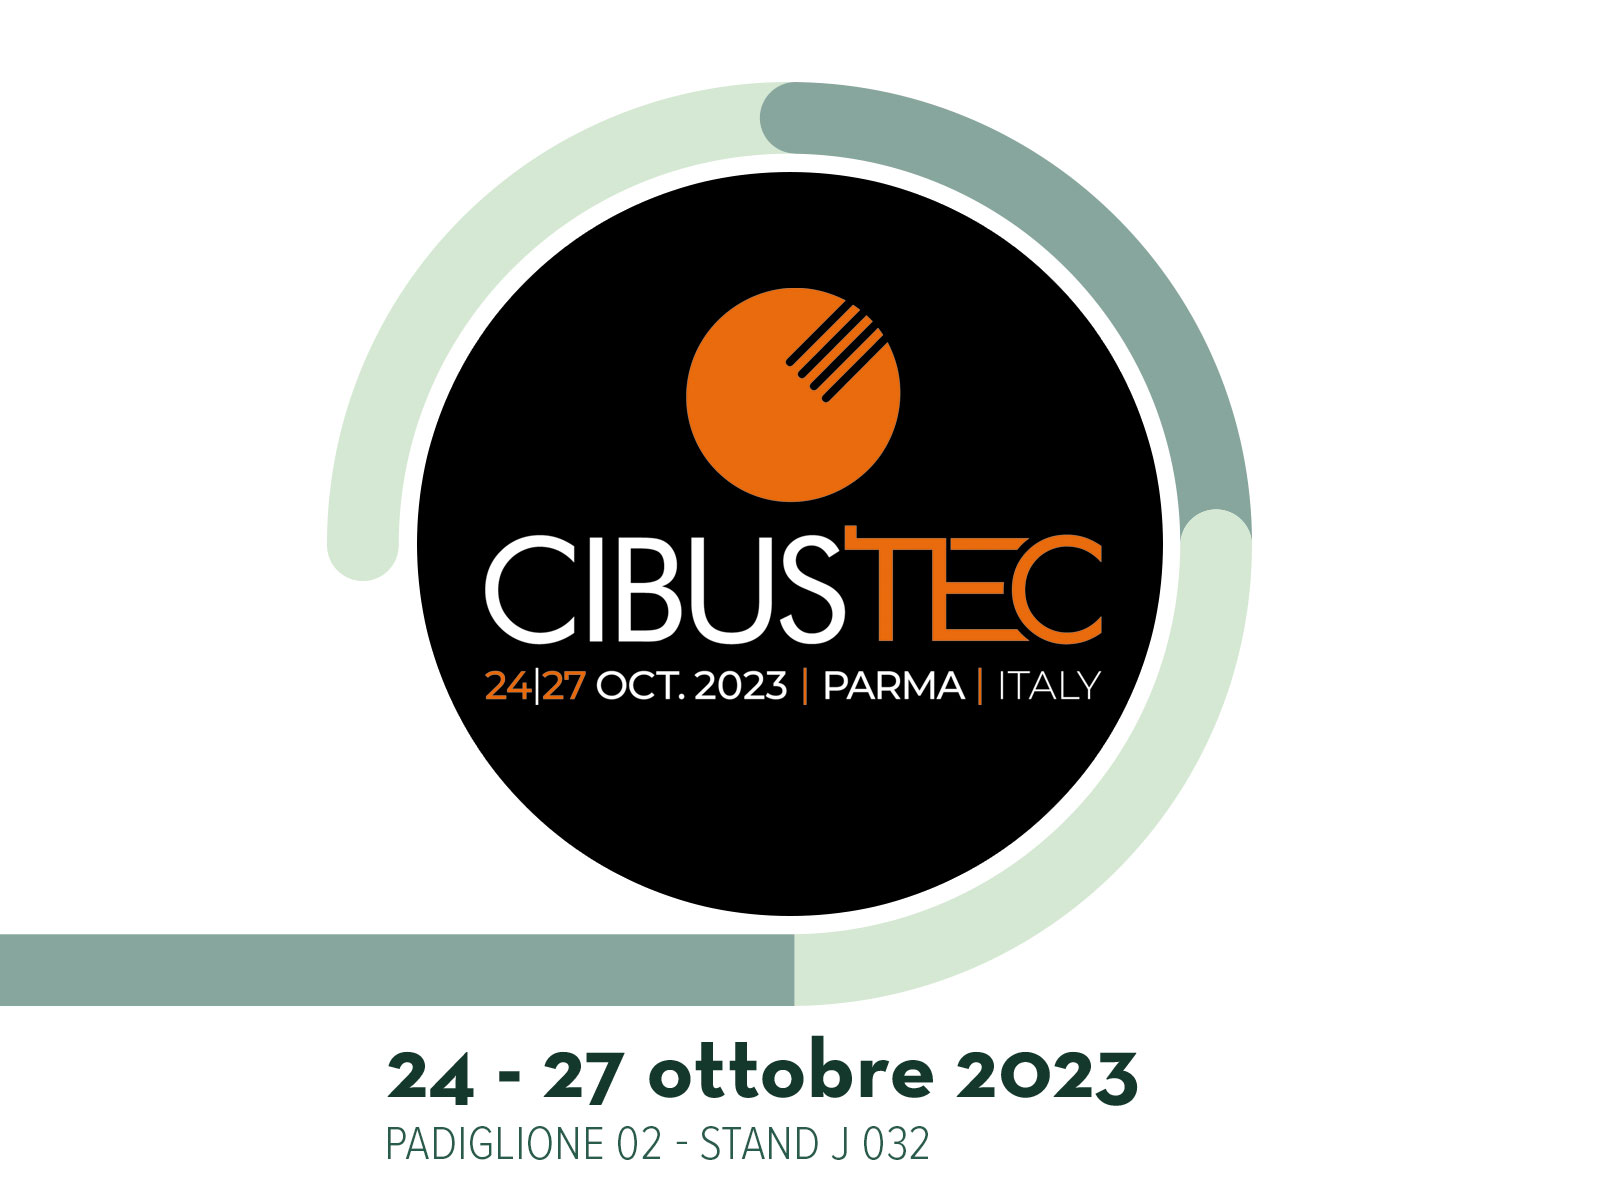 Siamo entusiasti di partecipare al Cibus Tec 2023, un evento di primaria importanza per esplorare le più recenti tendenze, le avanzate tecnologie e...